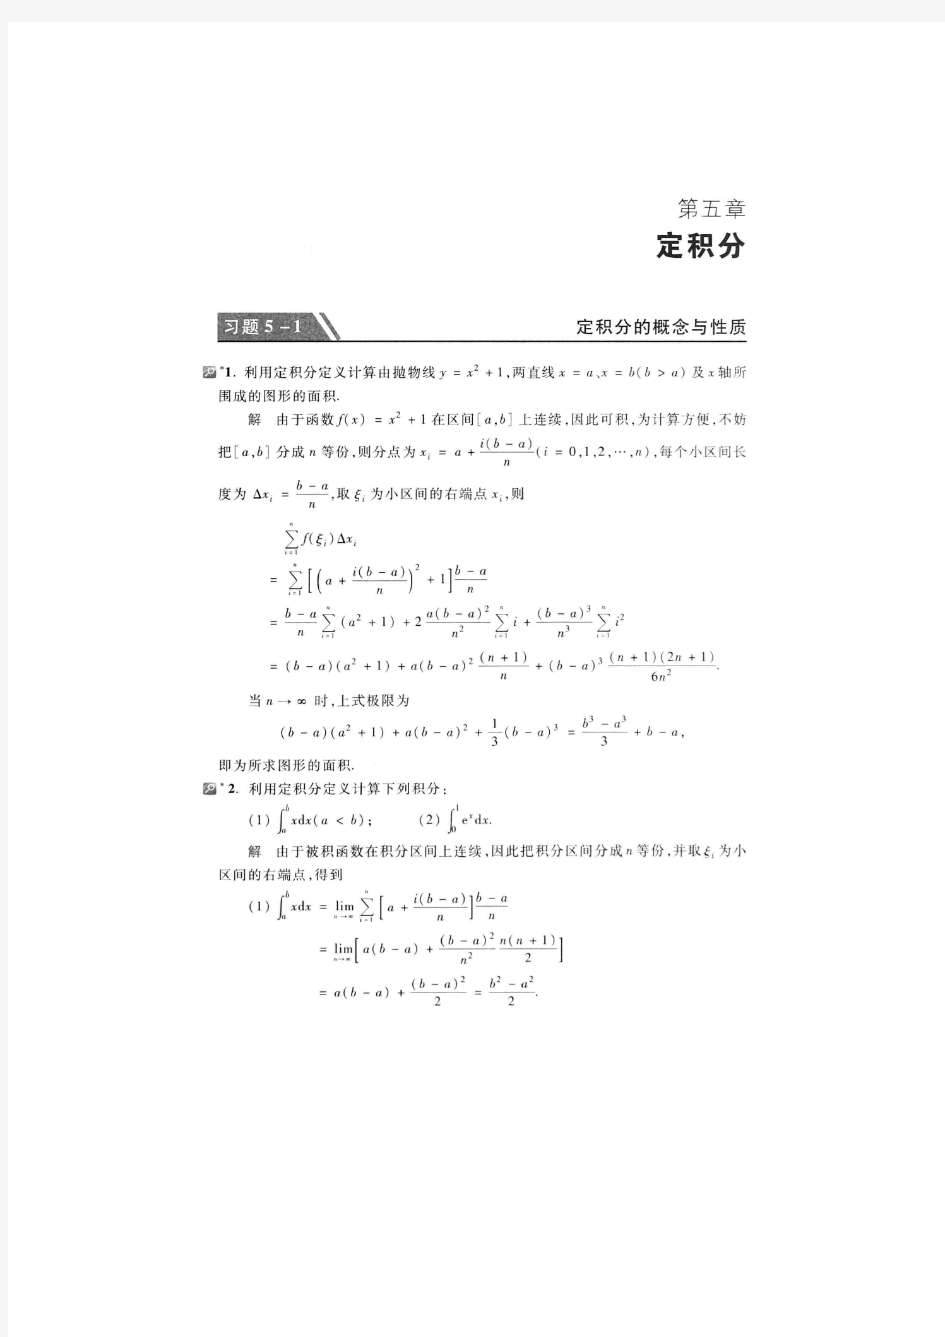 179_高等数学(第七版)(上册) 习题5.1 同济大学数学系,高等教育出版社